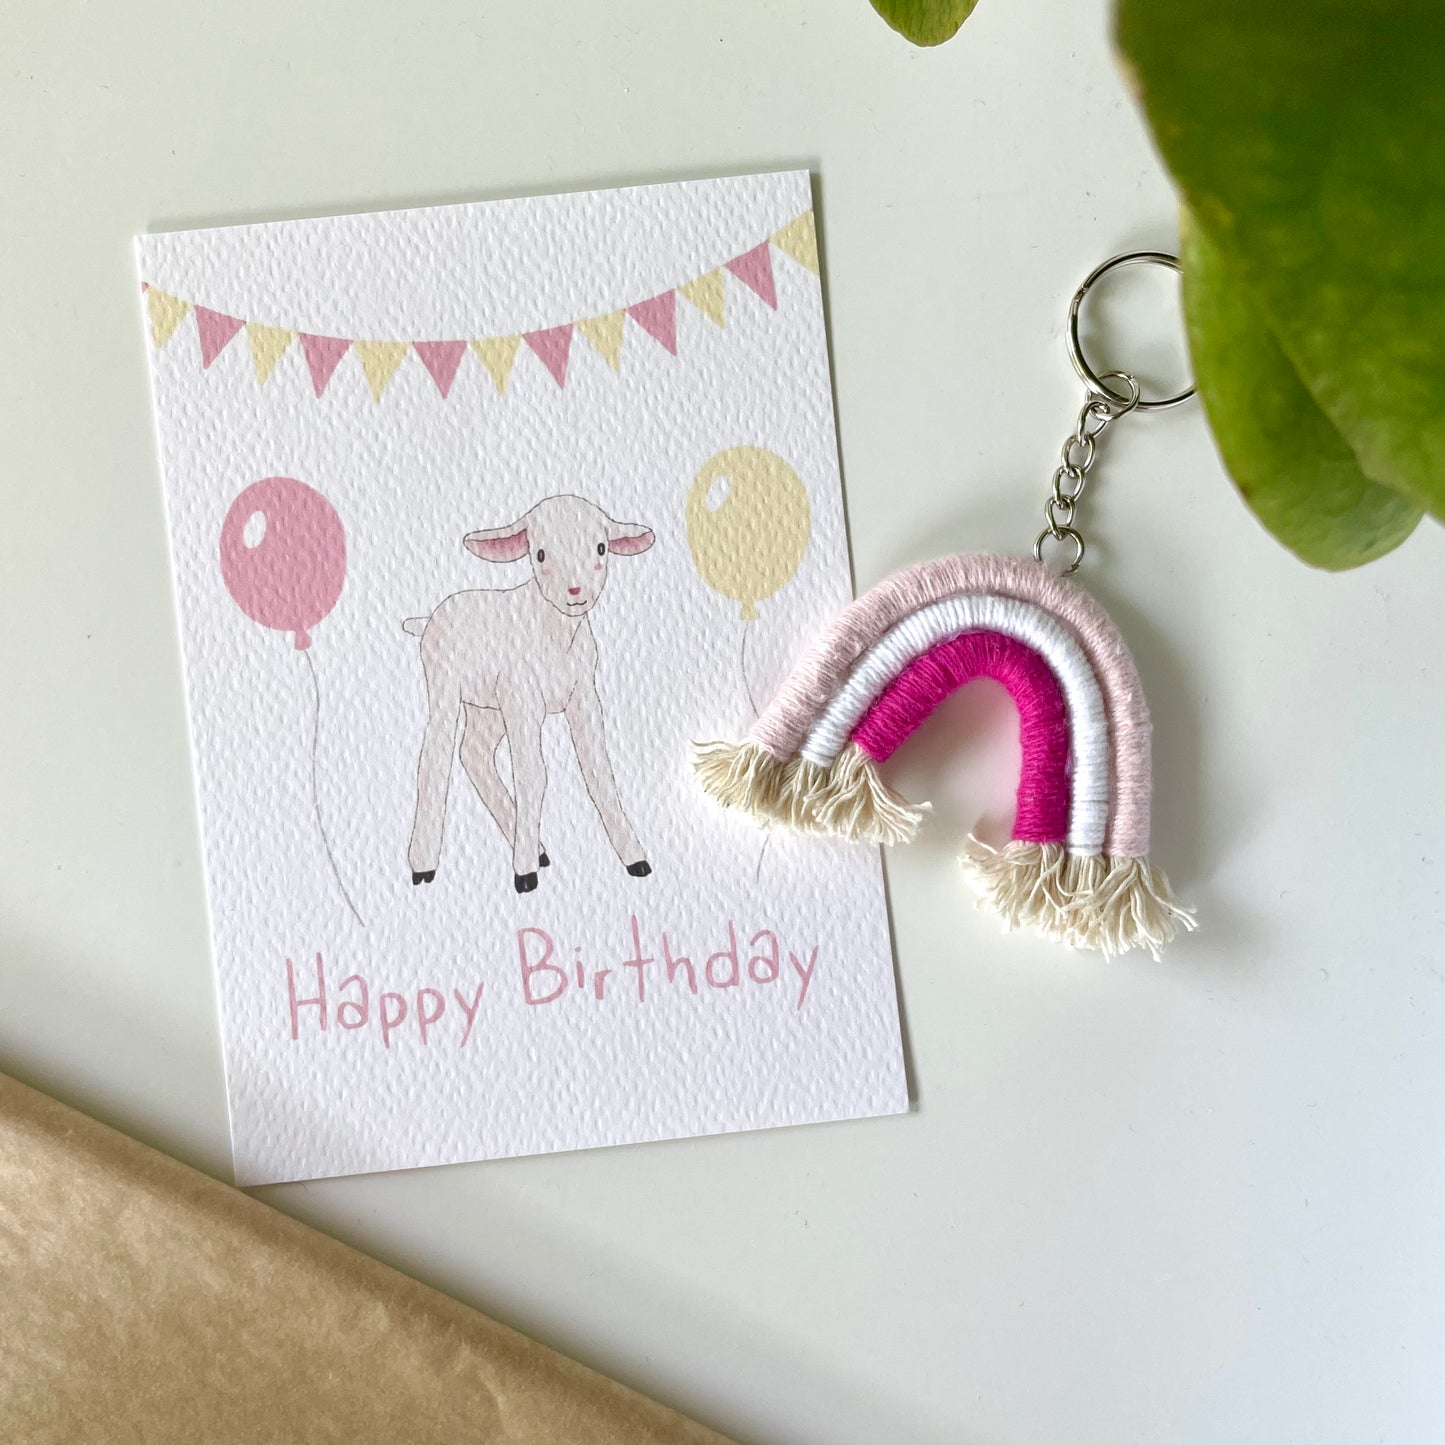 Carte postale mouton joyeux anniversaire